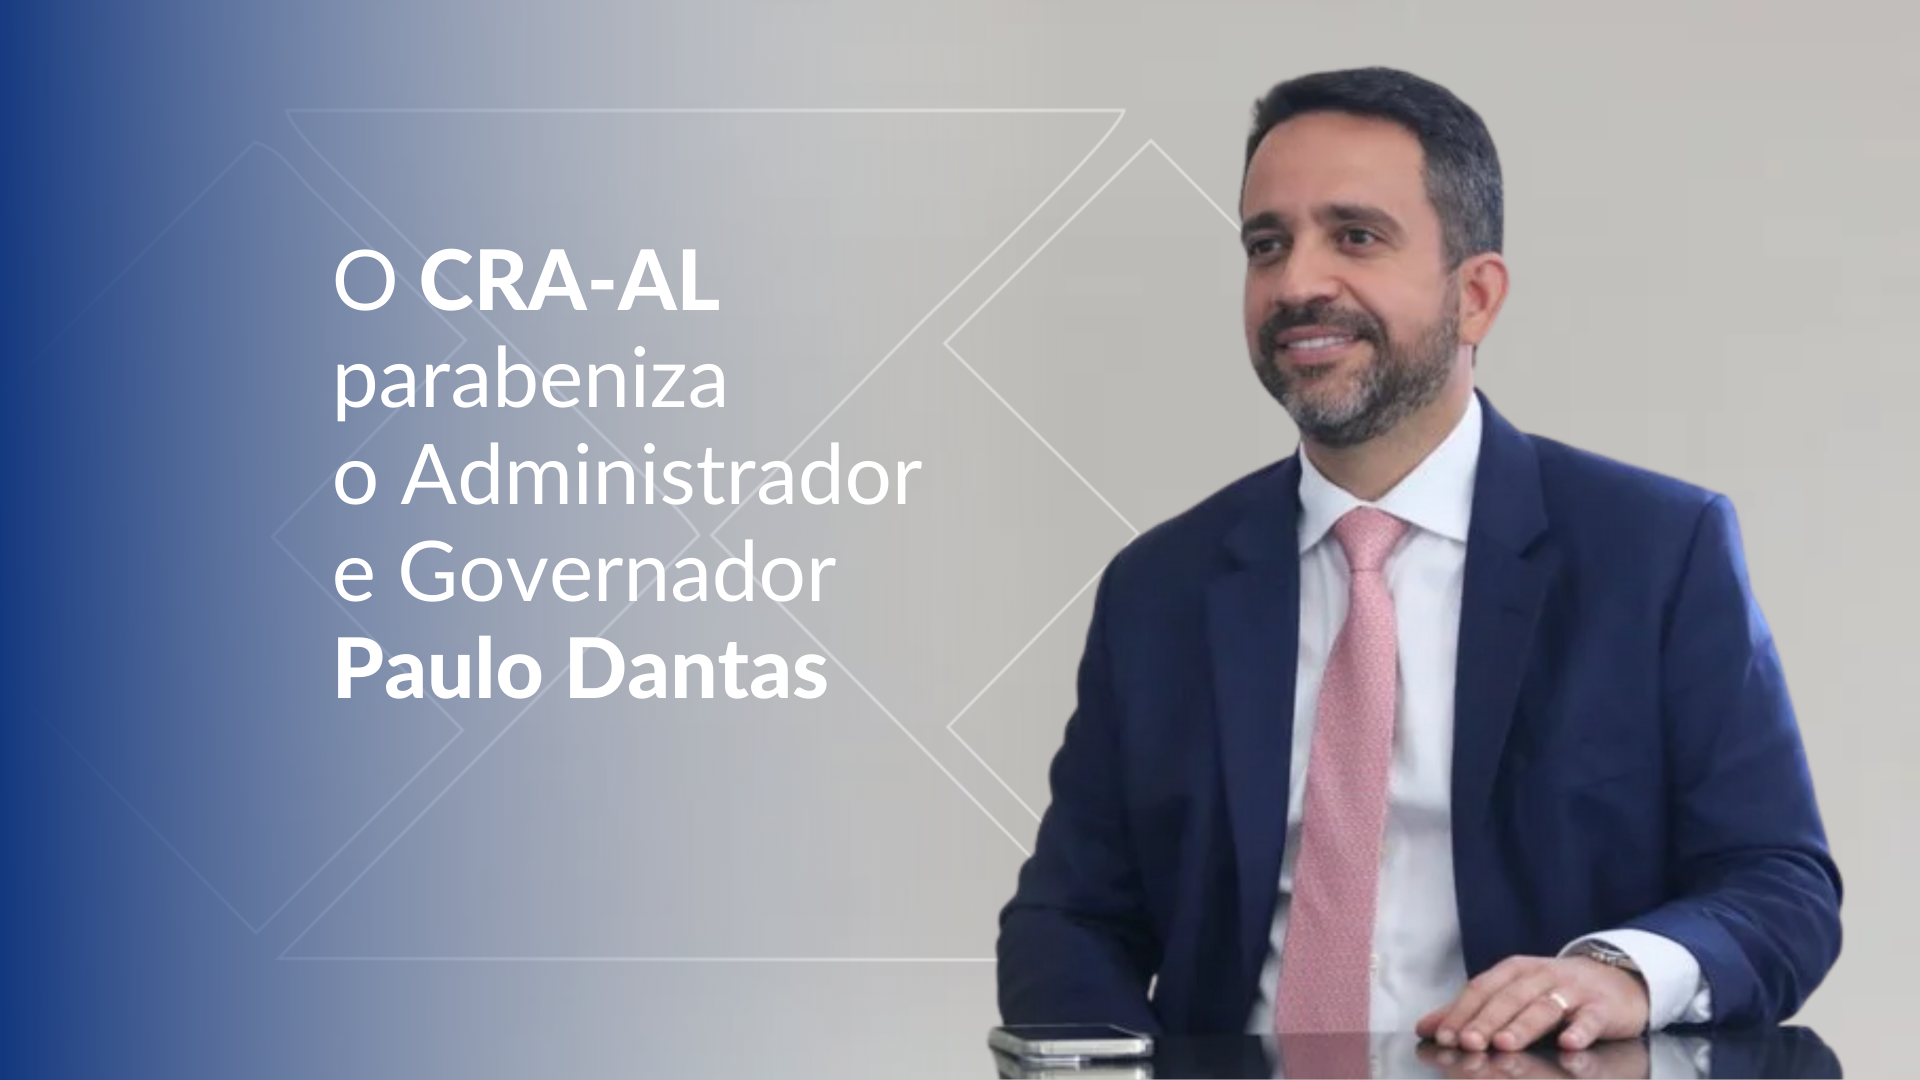 You are currently viewing O CRA-AL parabeniza o Administrador Paulo Dantas pela posse no cargo de Governador de Alagoas